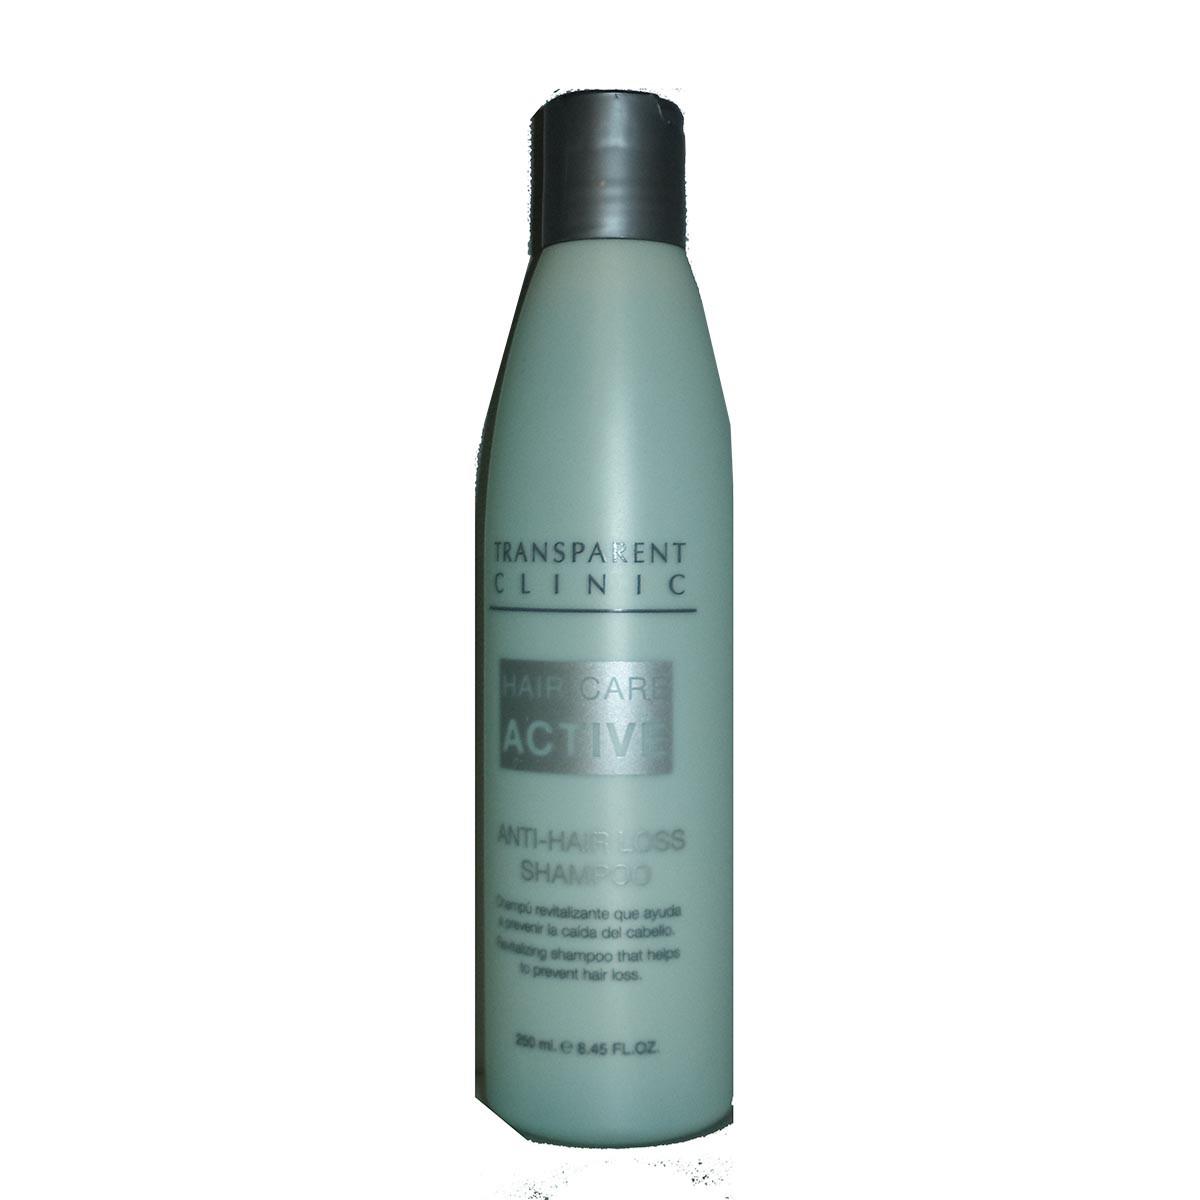 transparent-clinic-hair-care-antifall-shampoo-250ml